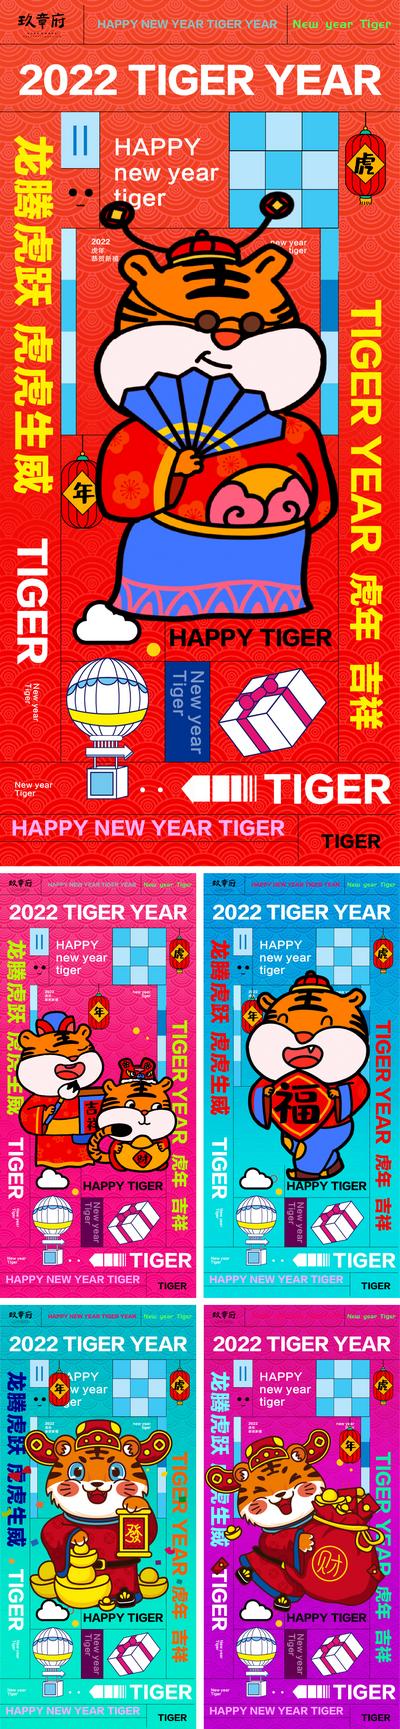 南门网 海报 中国传统节日 新年 2022 虎年 插画 系列  孟菲斯 国潮 卡通  老虎